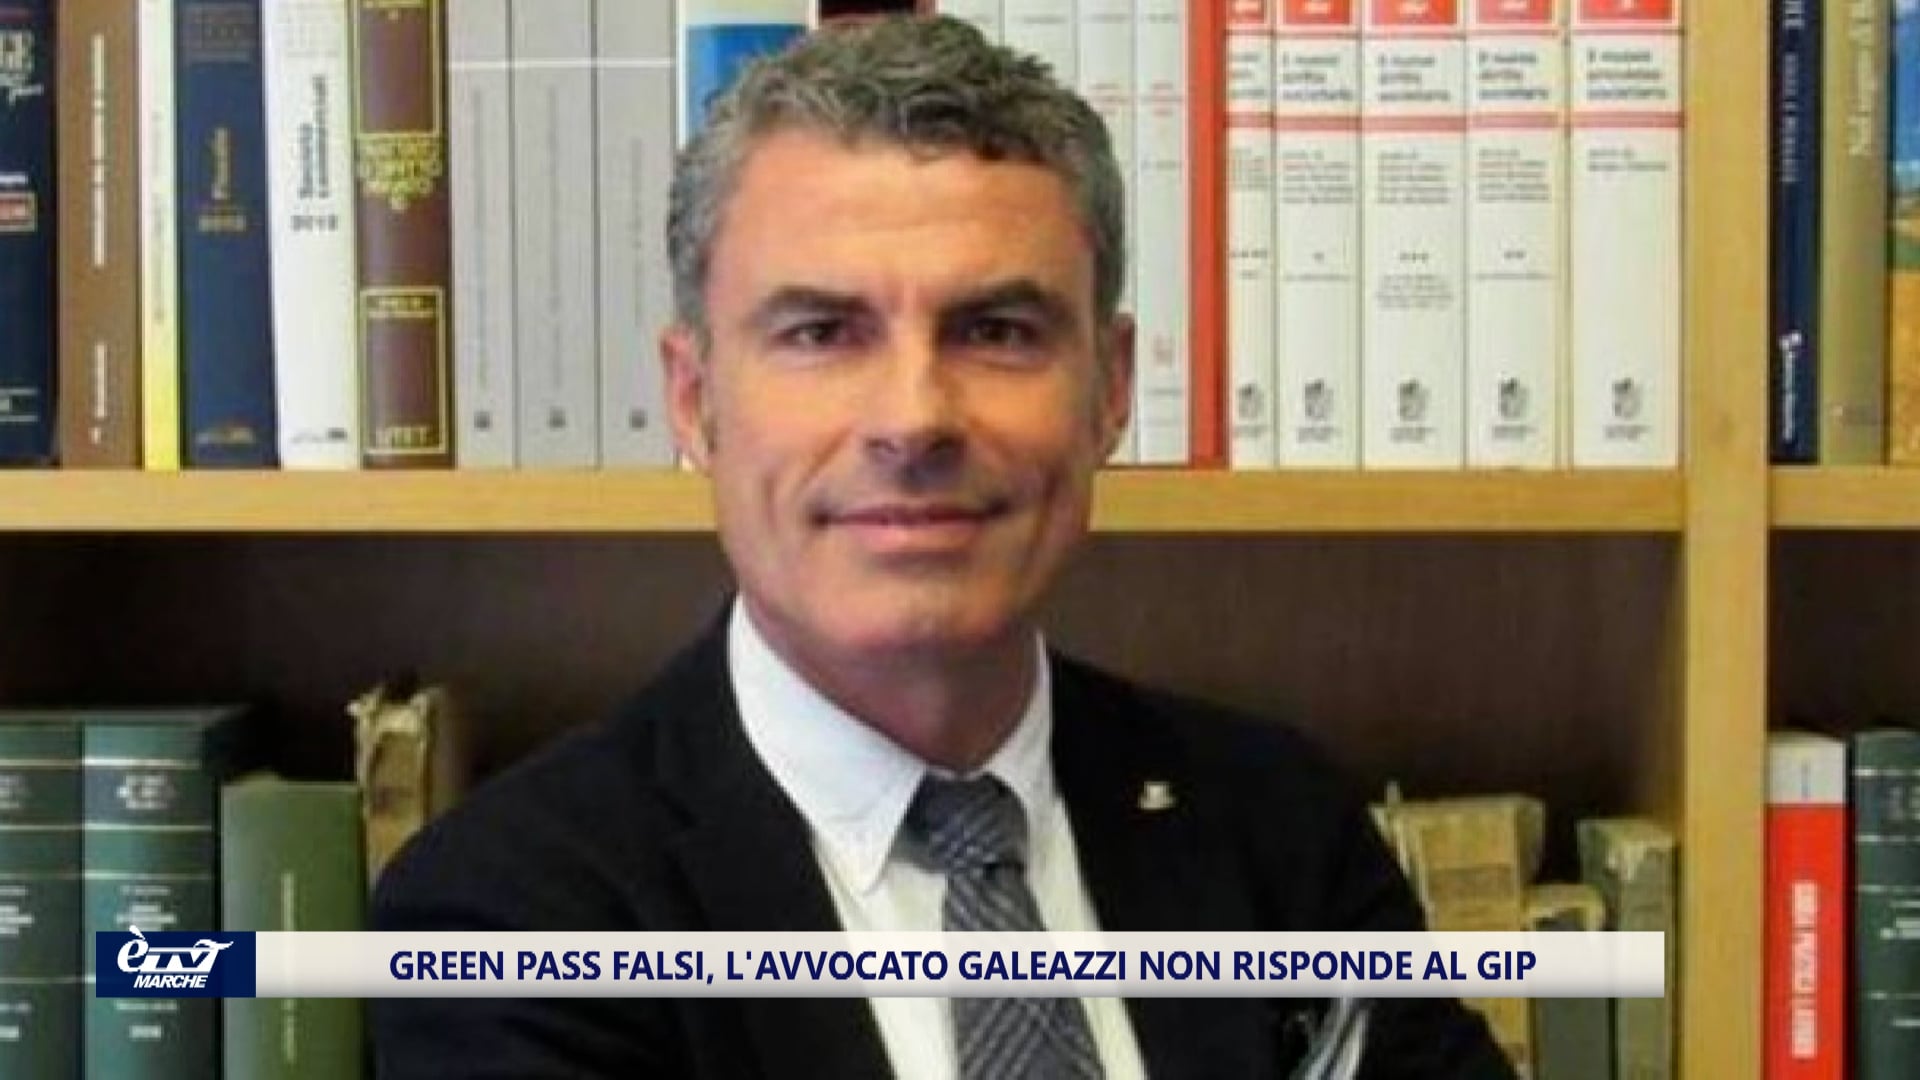 Green pass falsi, l'avvocato Galeazzi non risponde al Gip